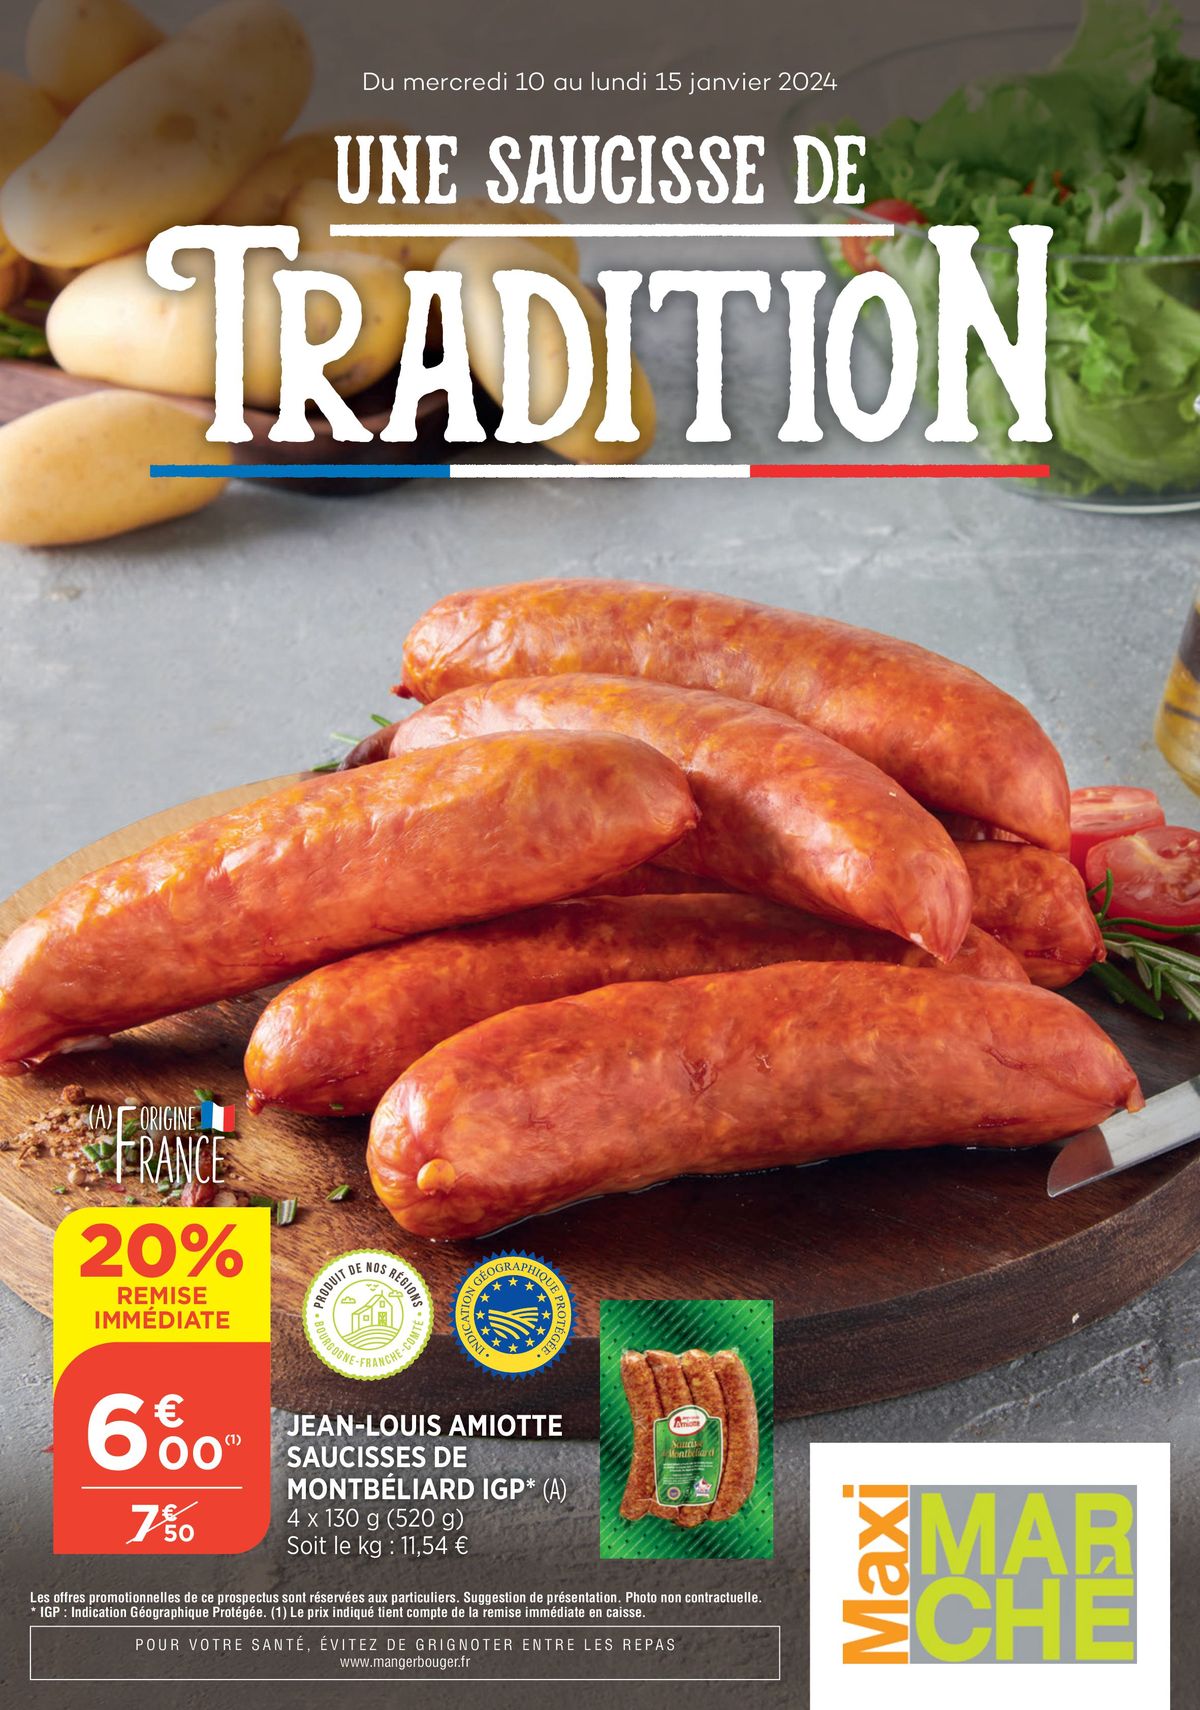 Catalogue Une saucisse de tradition, page 00001